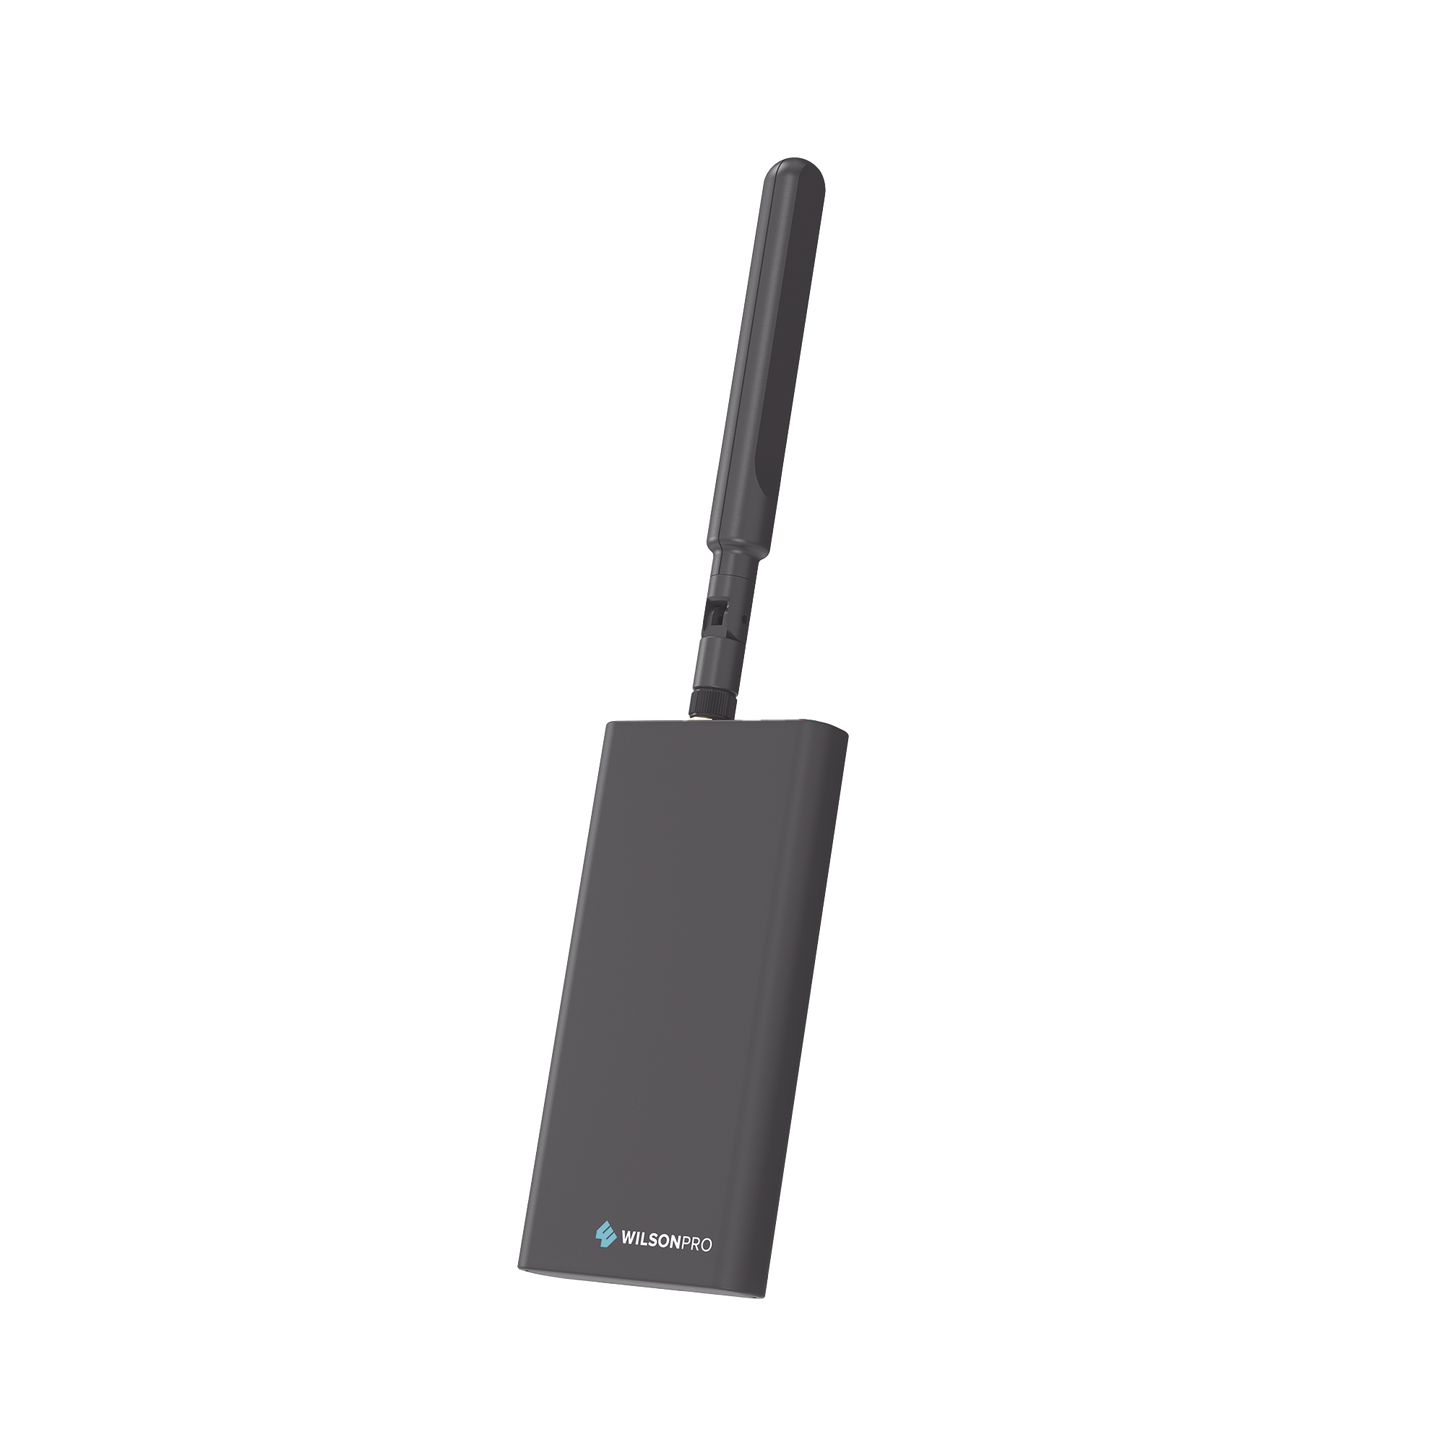 Medidor de Intensidad de Señal Celular. Mide la señal de diferentes bandas de frecuencias y las muestra en su celular por medio de una aplicación.